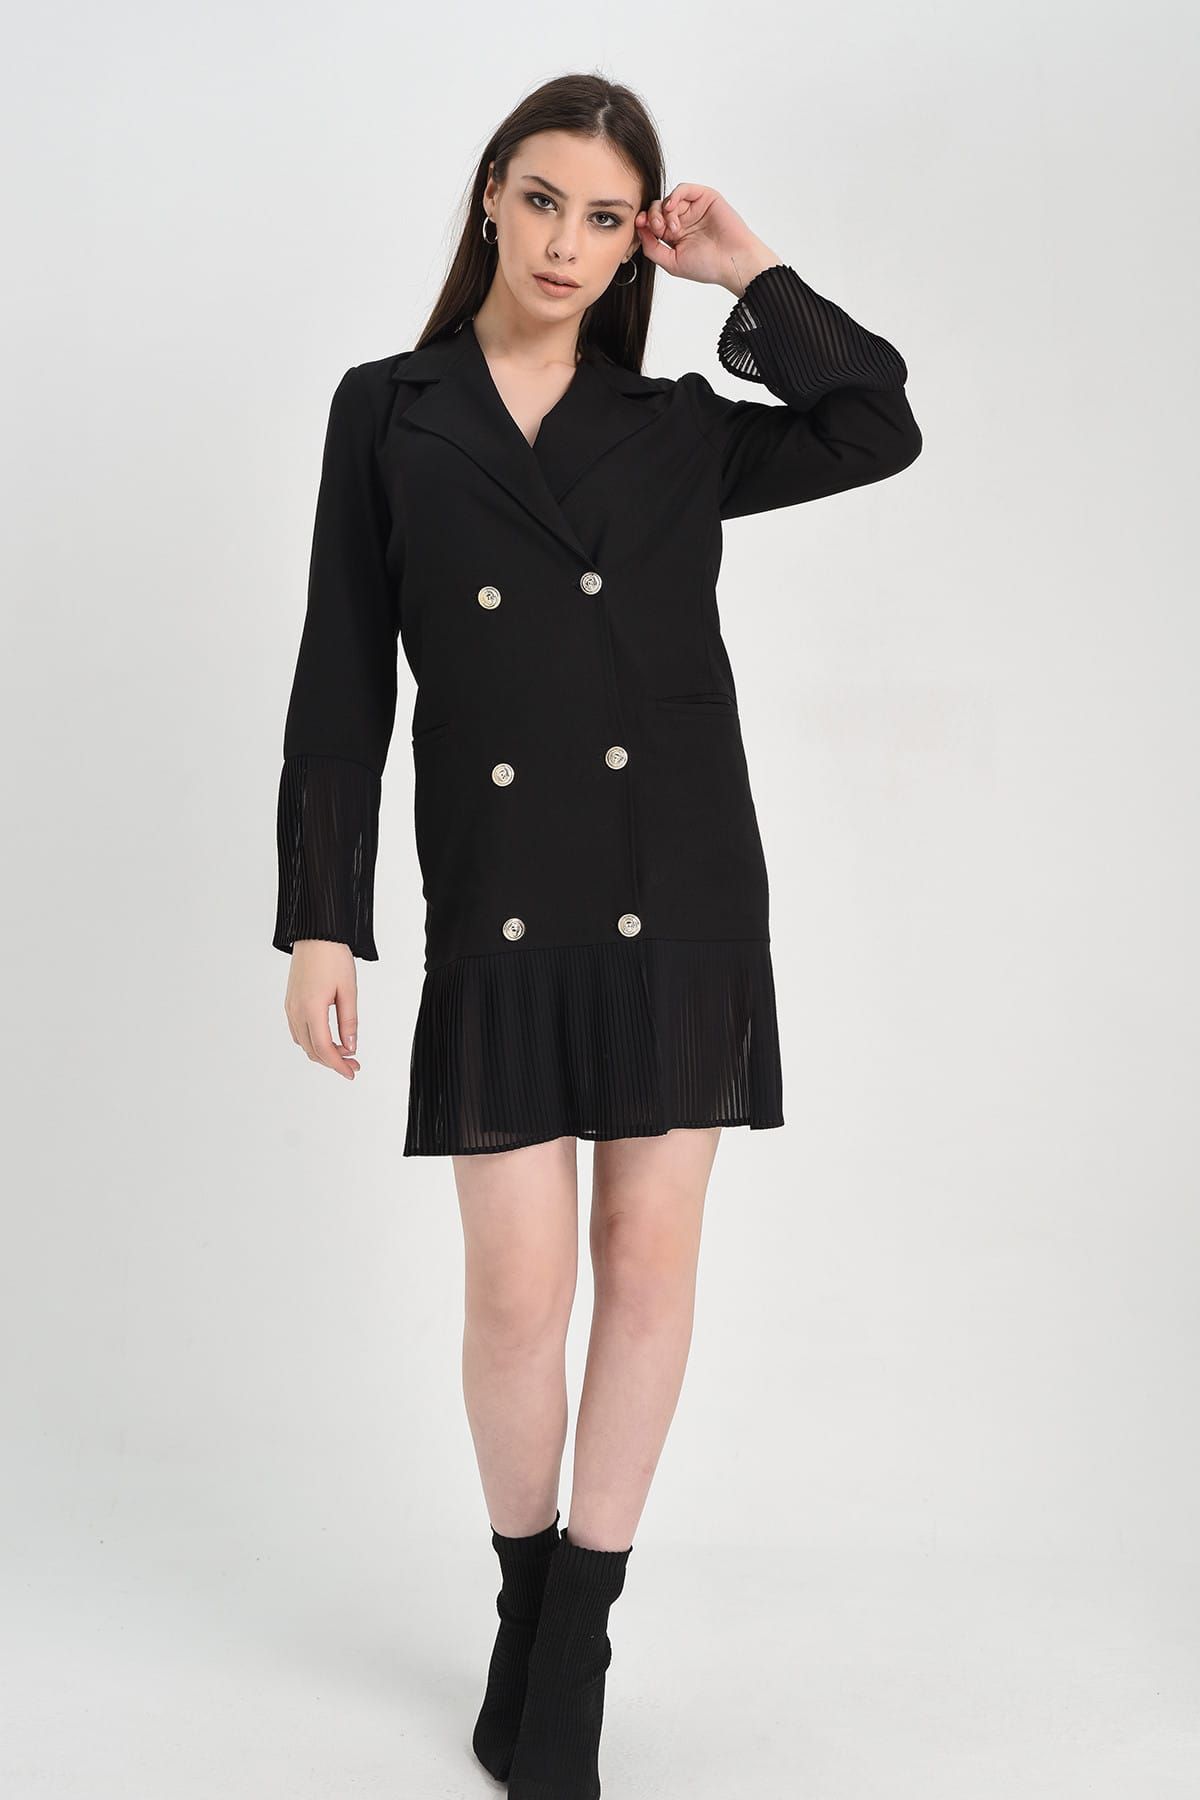 Hanna's Kadın Siyah Kolu Ve Eteği Pilise Detaylı Düğmeli Ceket Elbise Hn1253